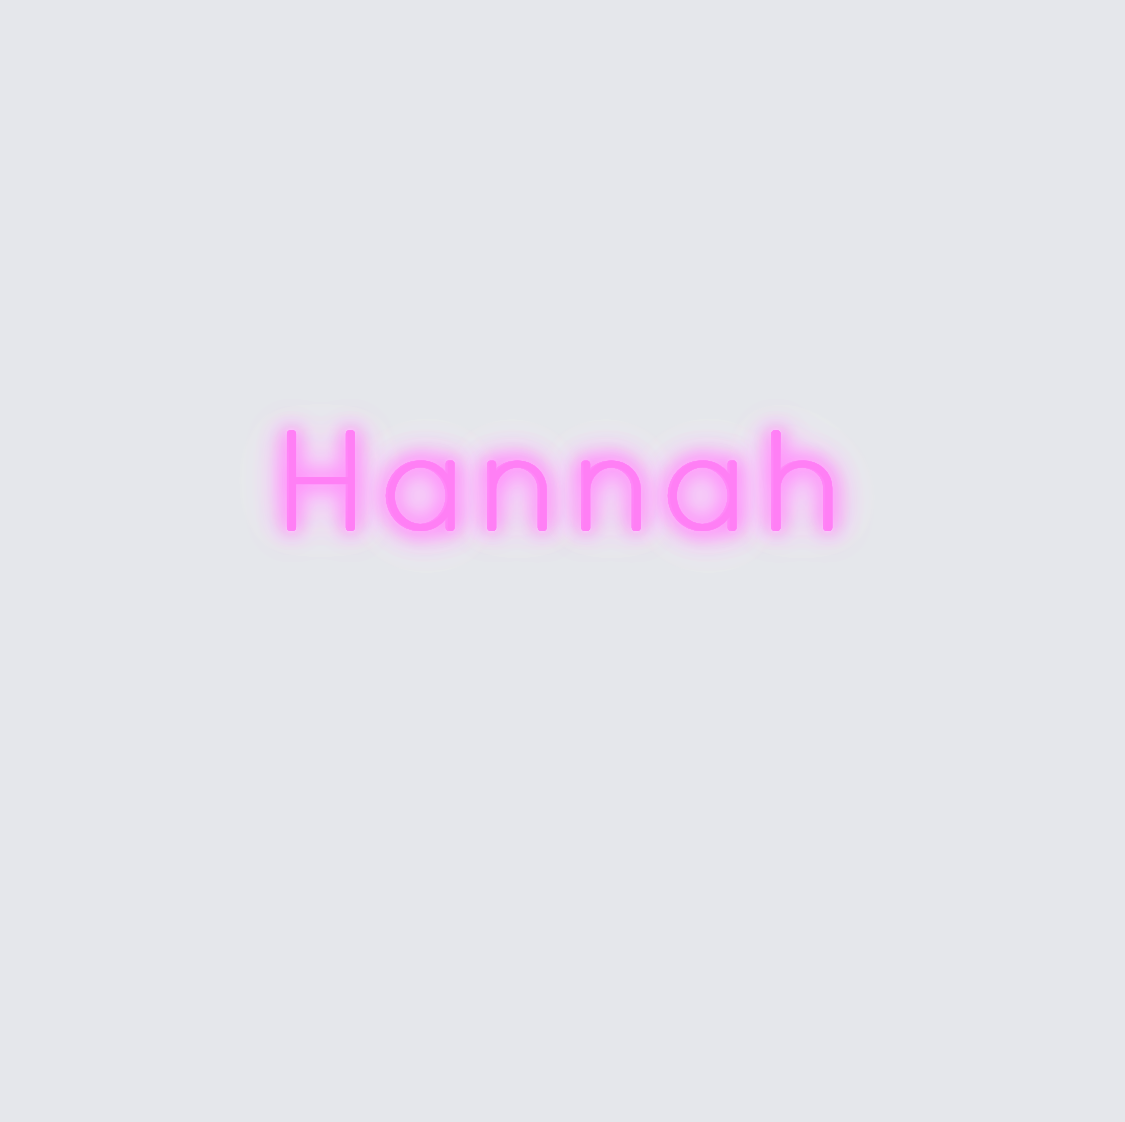 Custom neon sign - Hannah